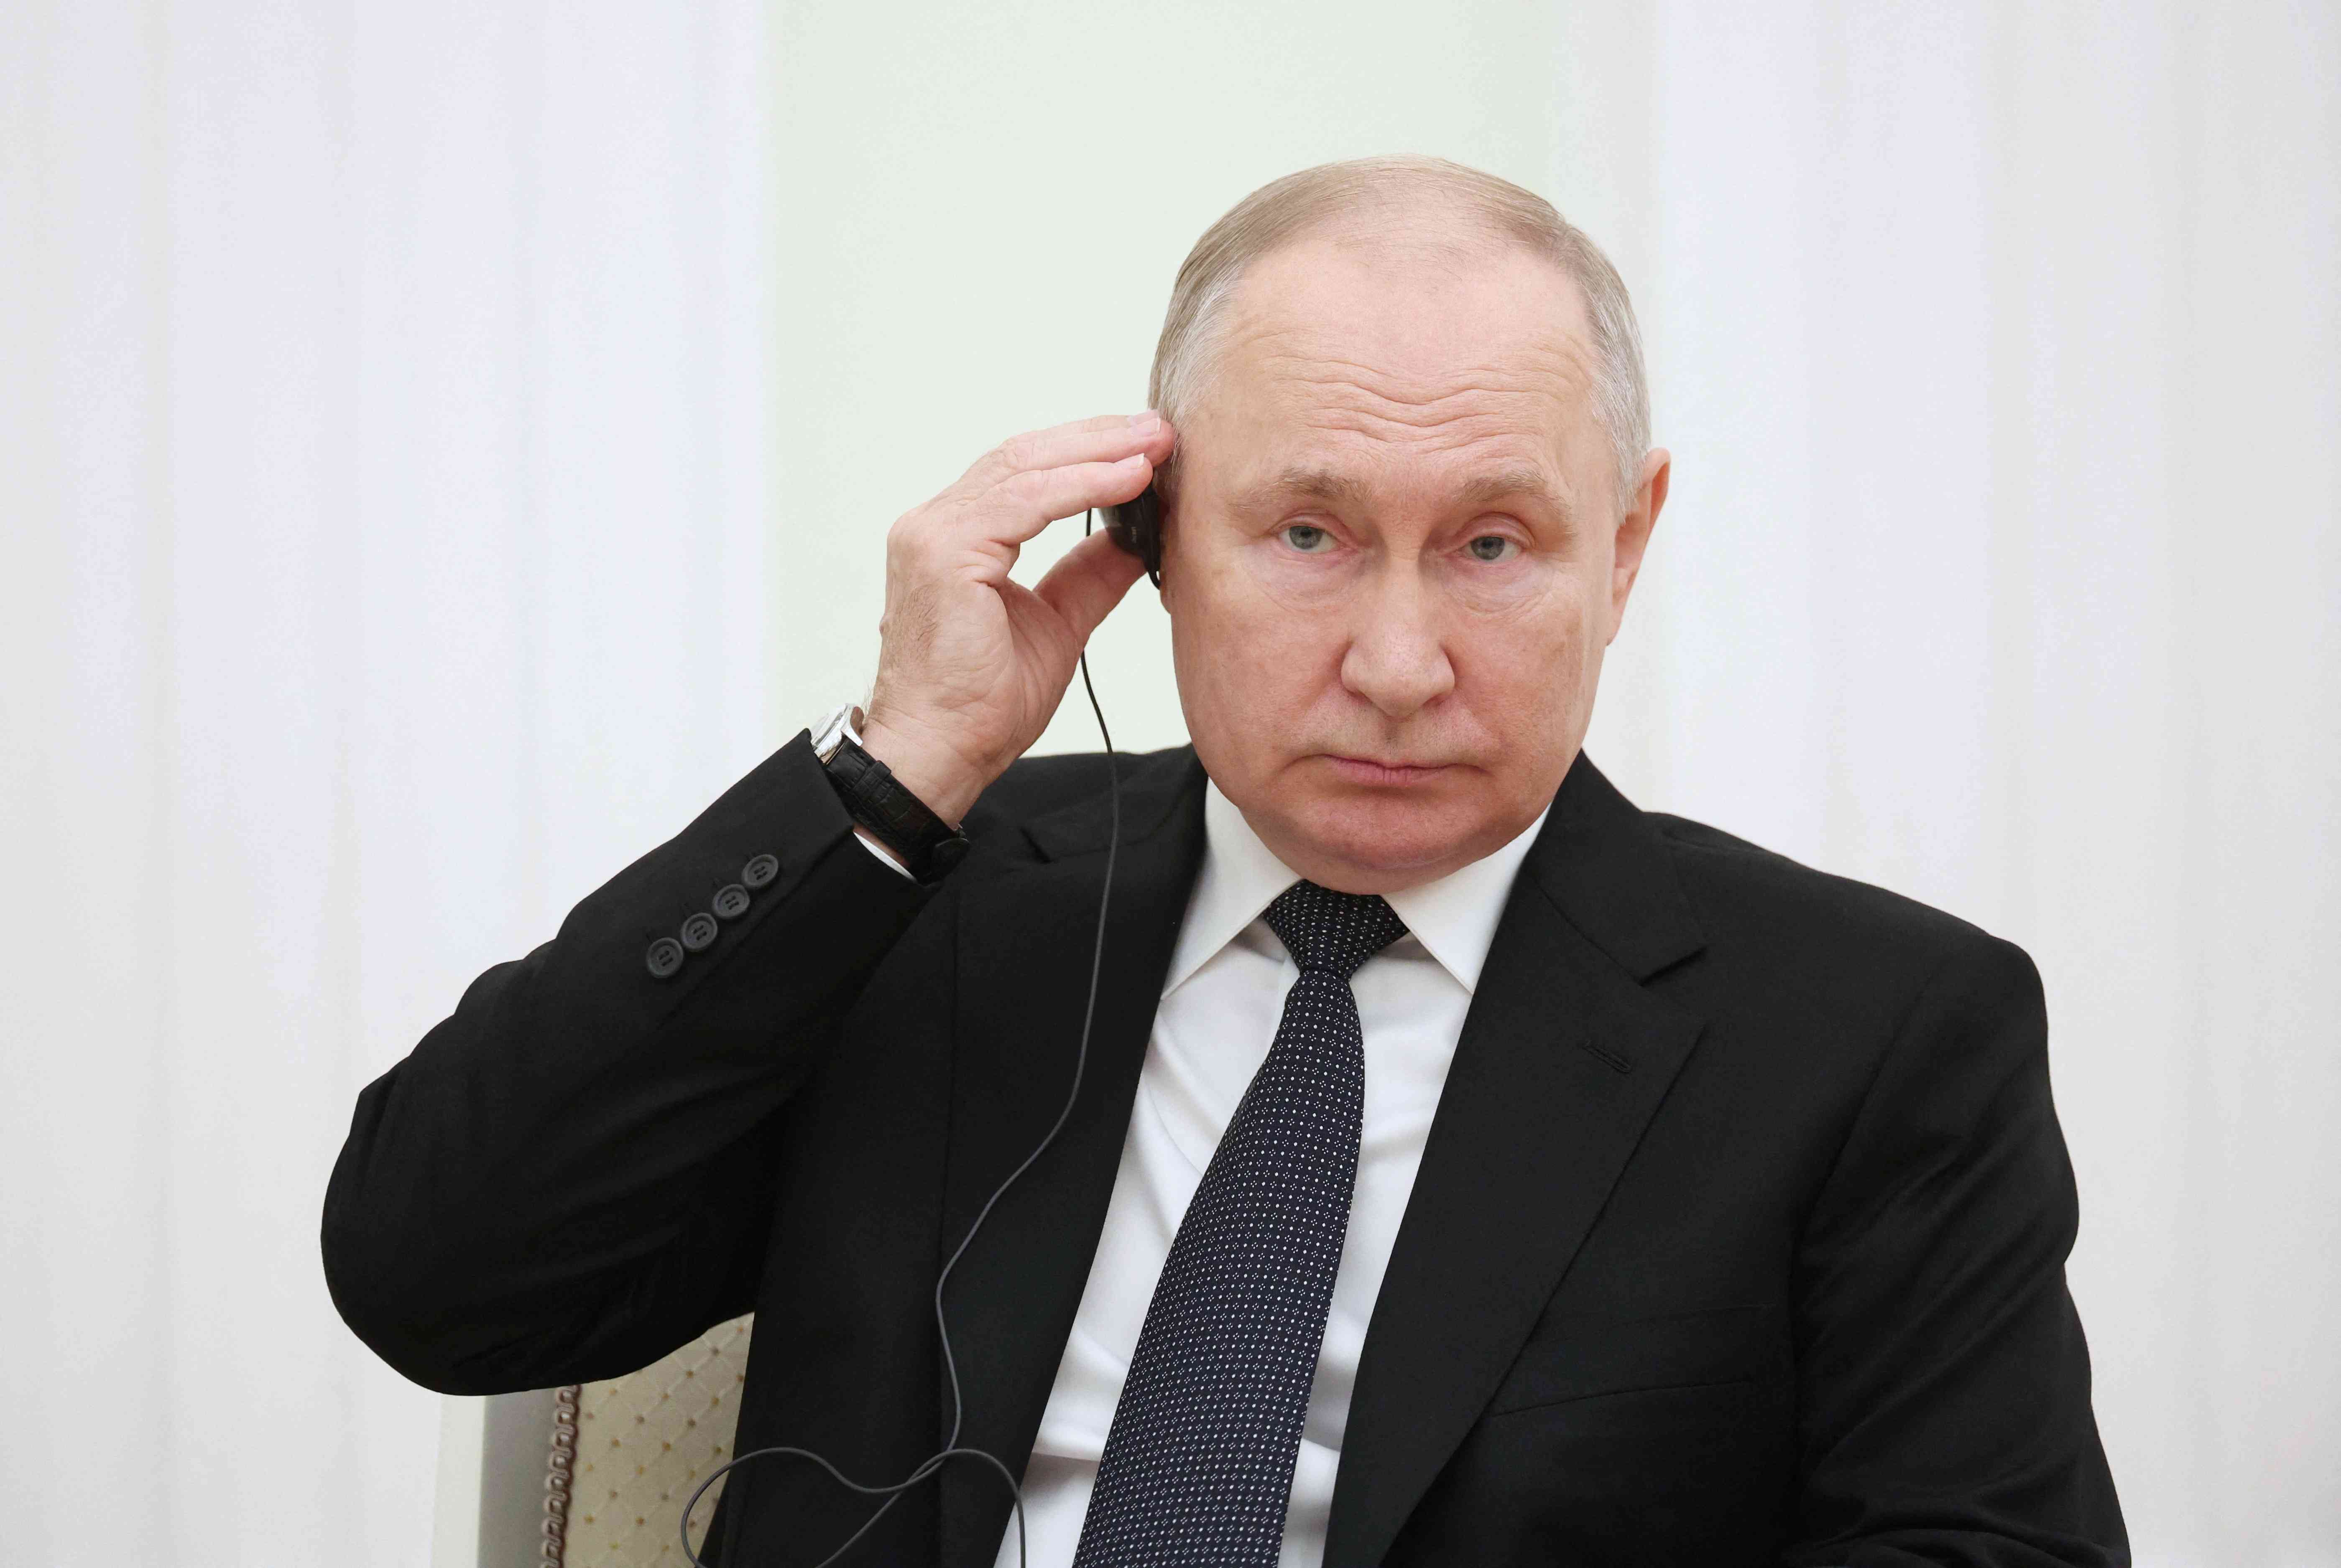 بوتين يعلن موقف روسيا من القضية الفلسطينية